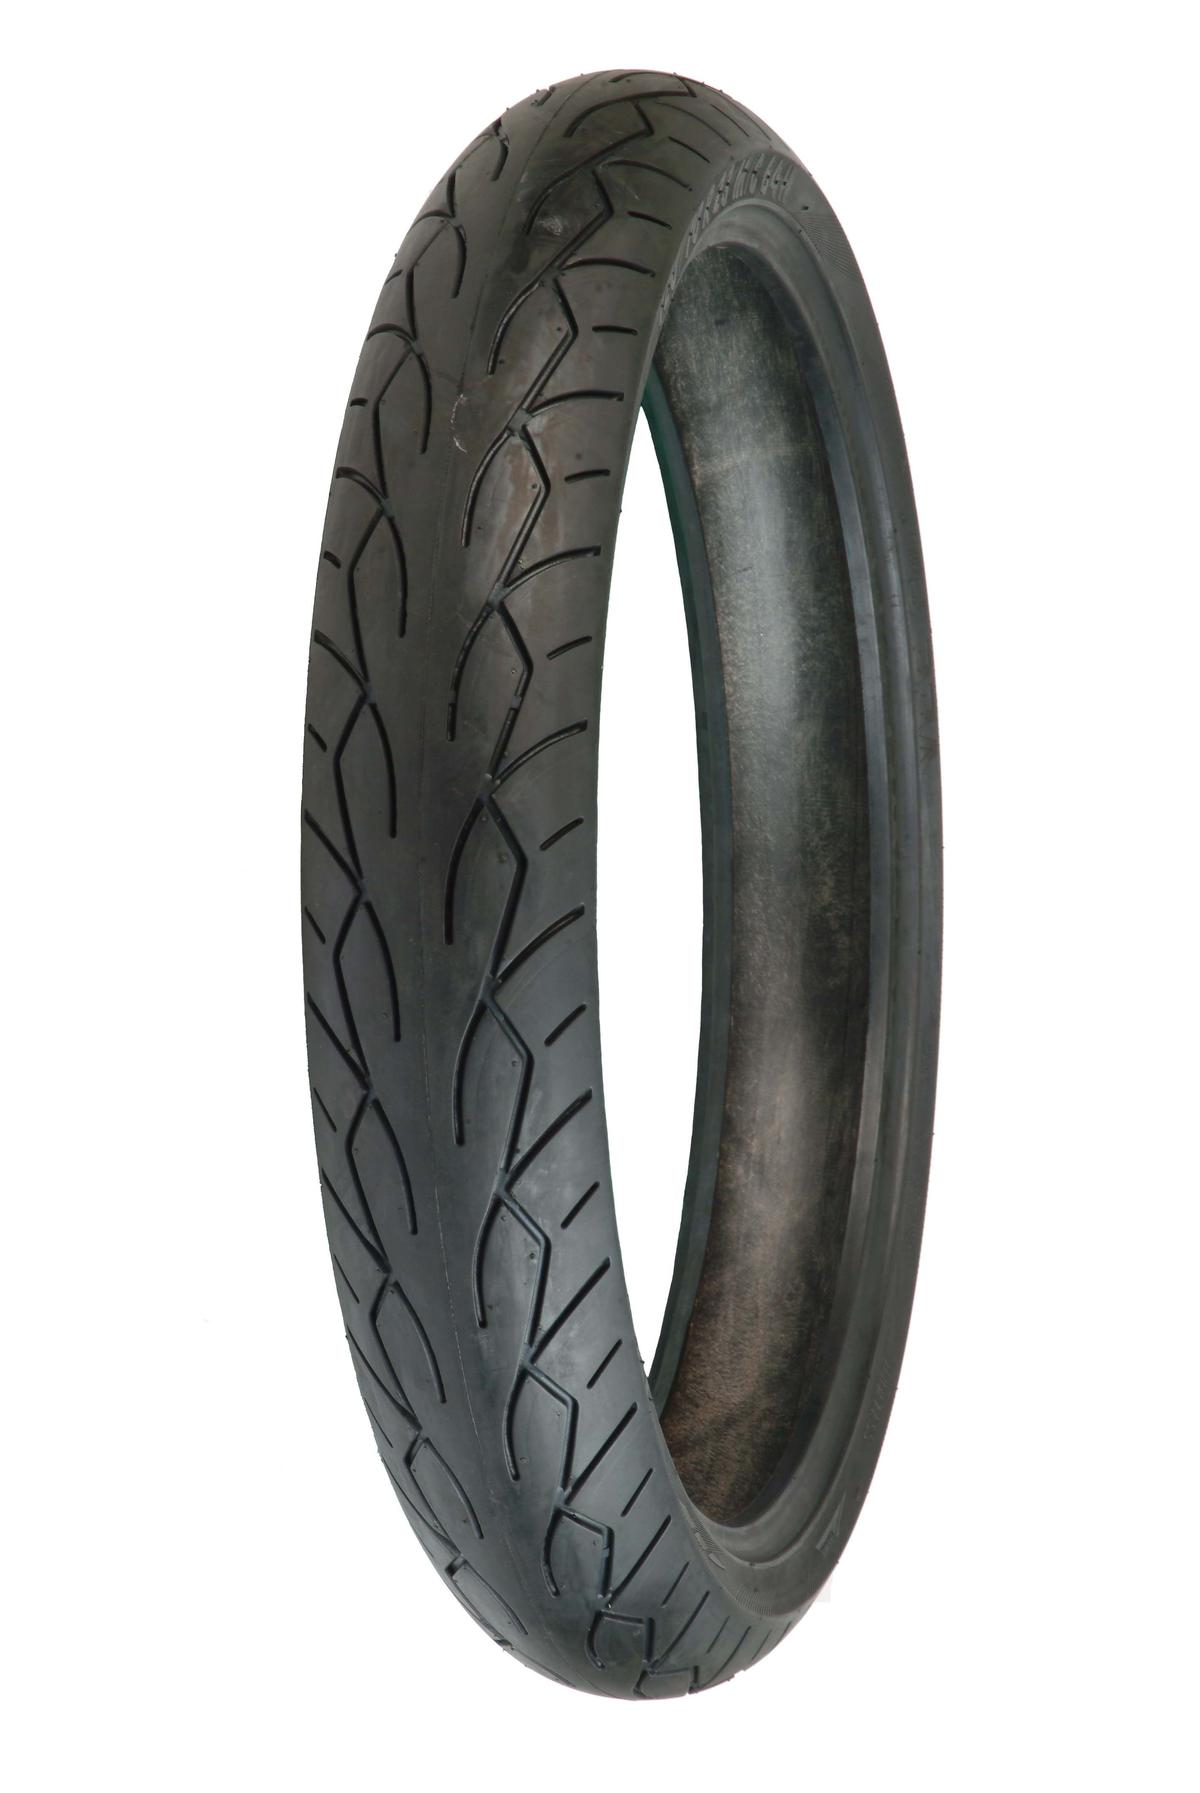 Vee Rubber VRM-302 Twin 140/75-17 Rear Motorcycle Street Tire